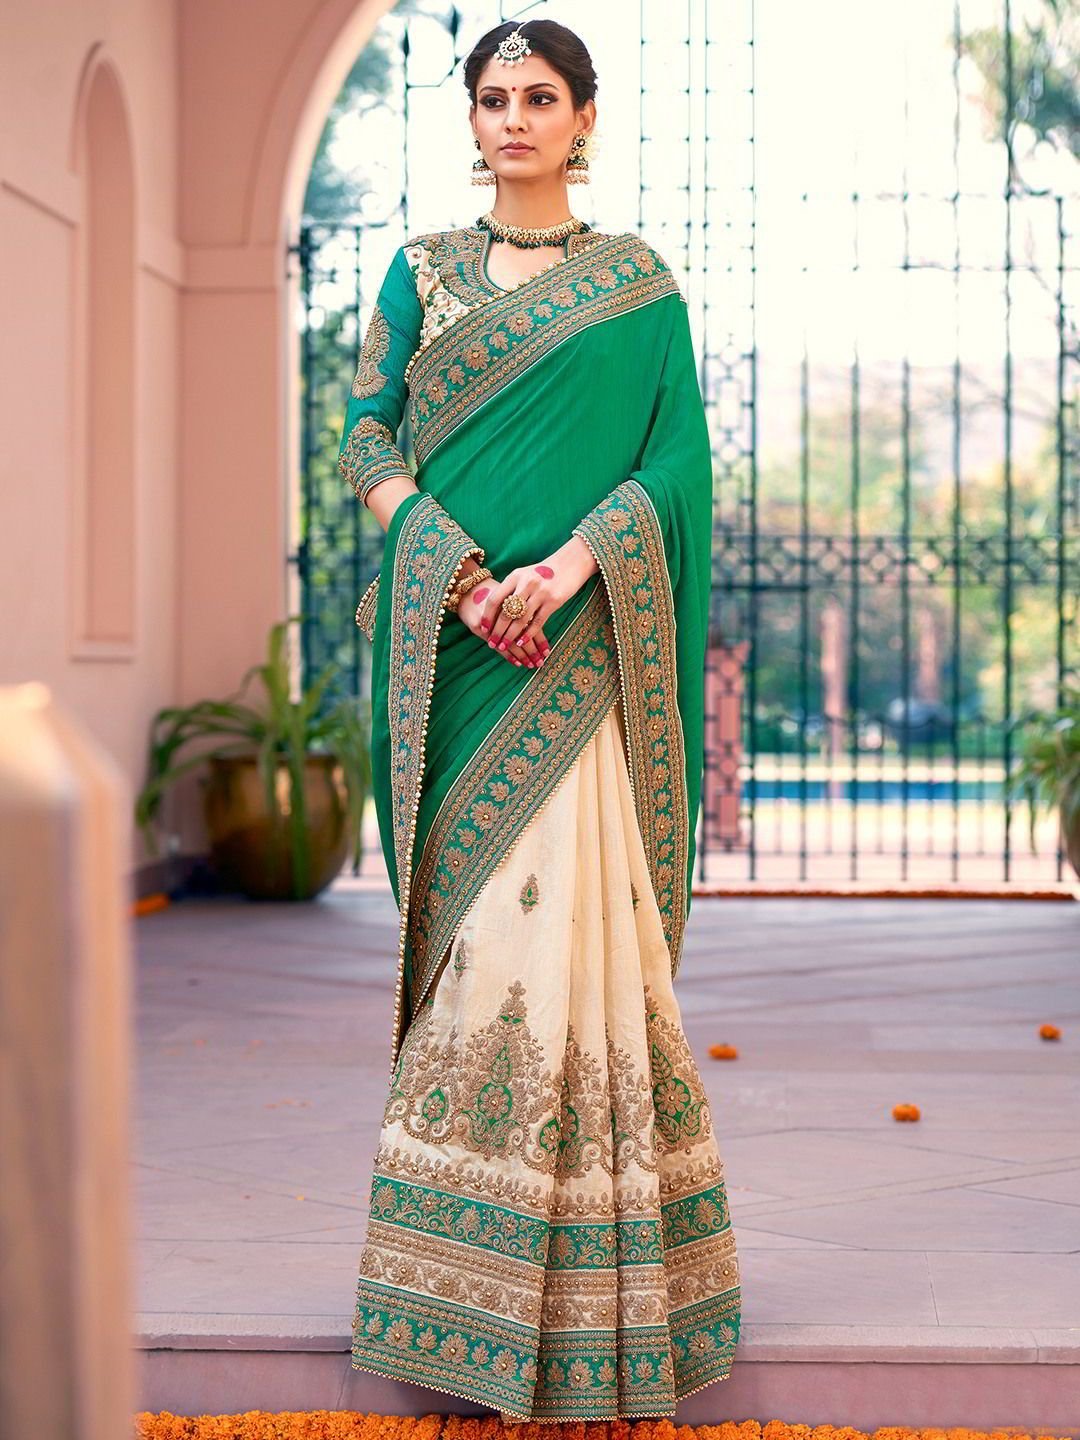 Женское сари индия. Национальная одежда Индии Сари. Сарри одежда в Индии. Сари — Национальная женская одежда Индии. Сари (женская одежда в Индии).